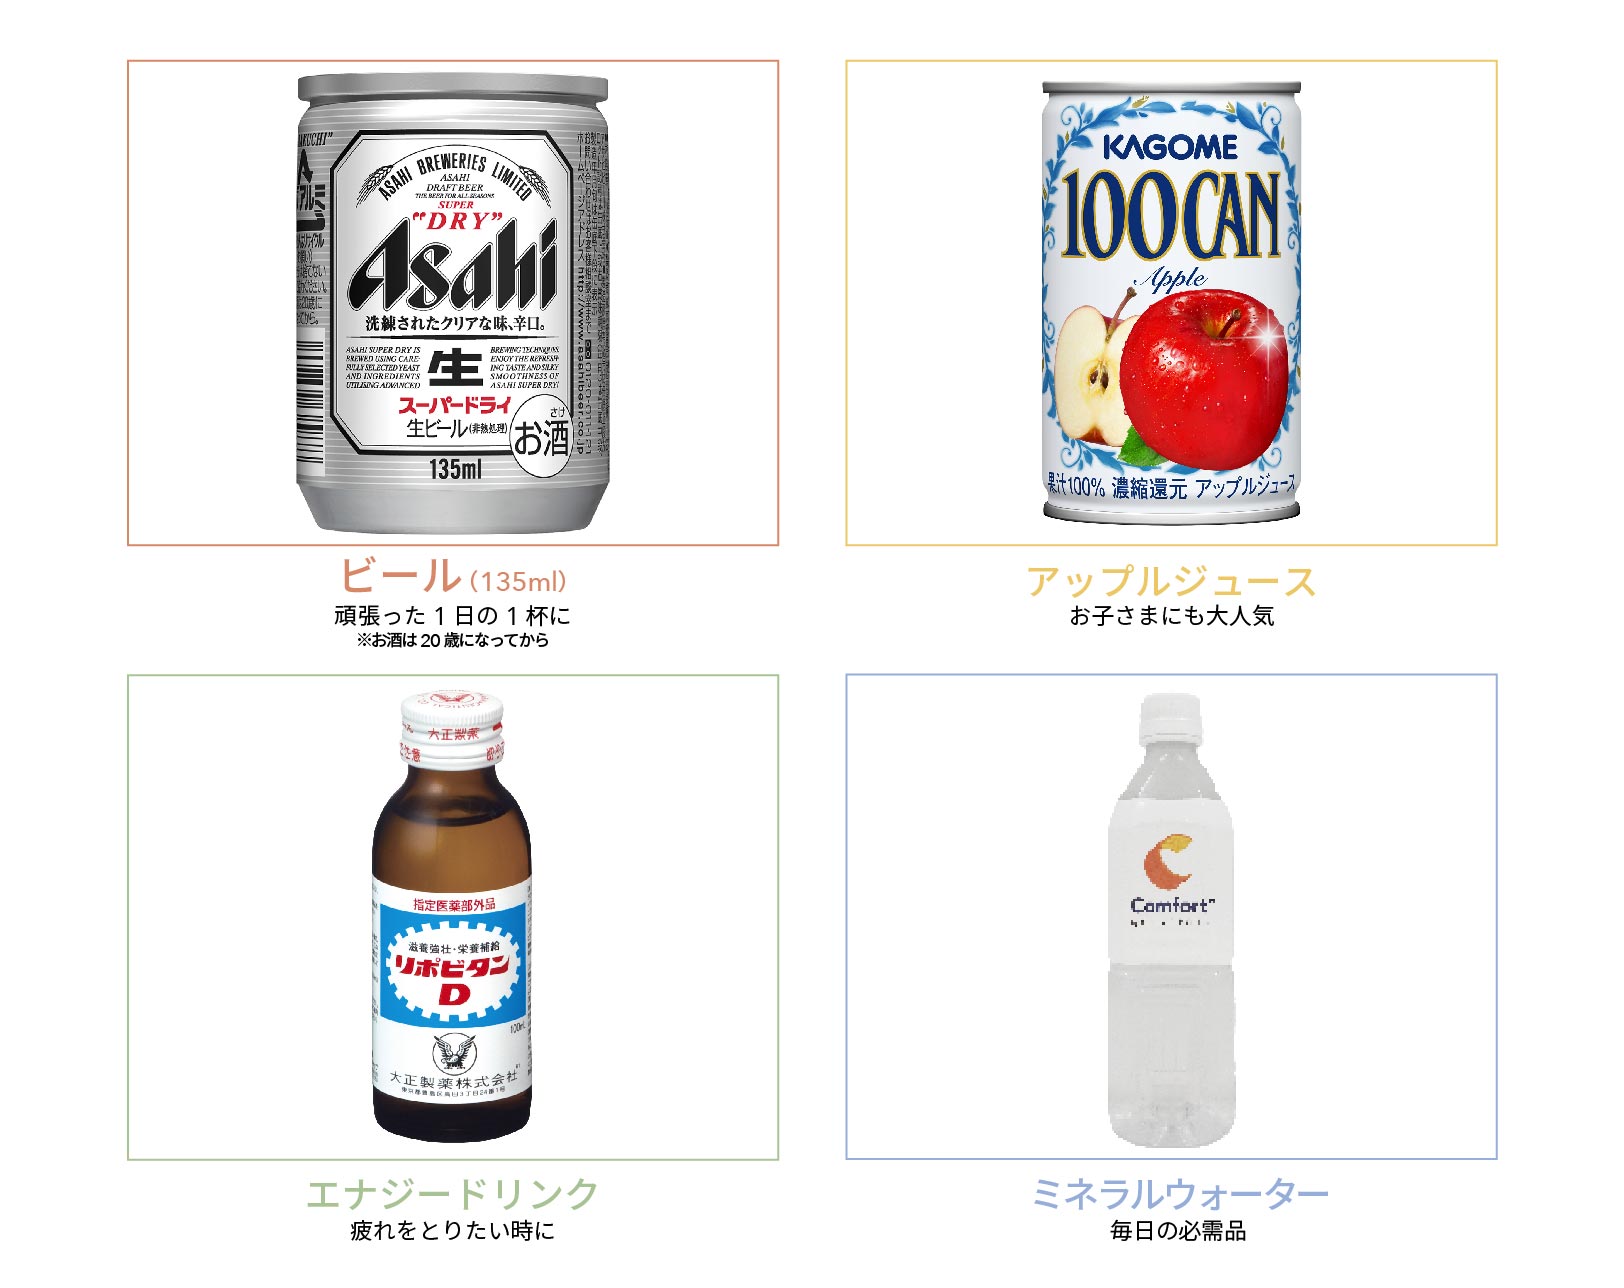 ビール、アップルジュース、リポビタンD、ミネラルウォーター